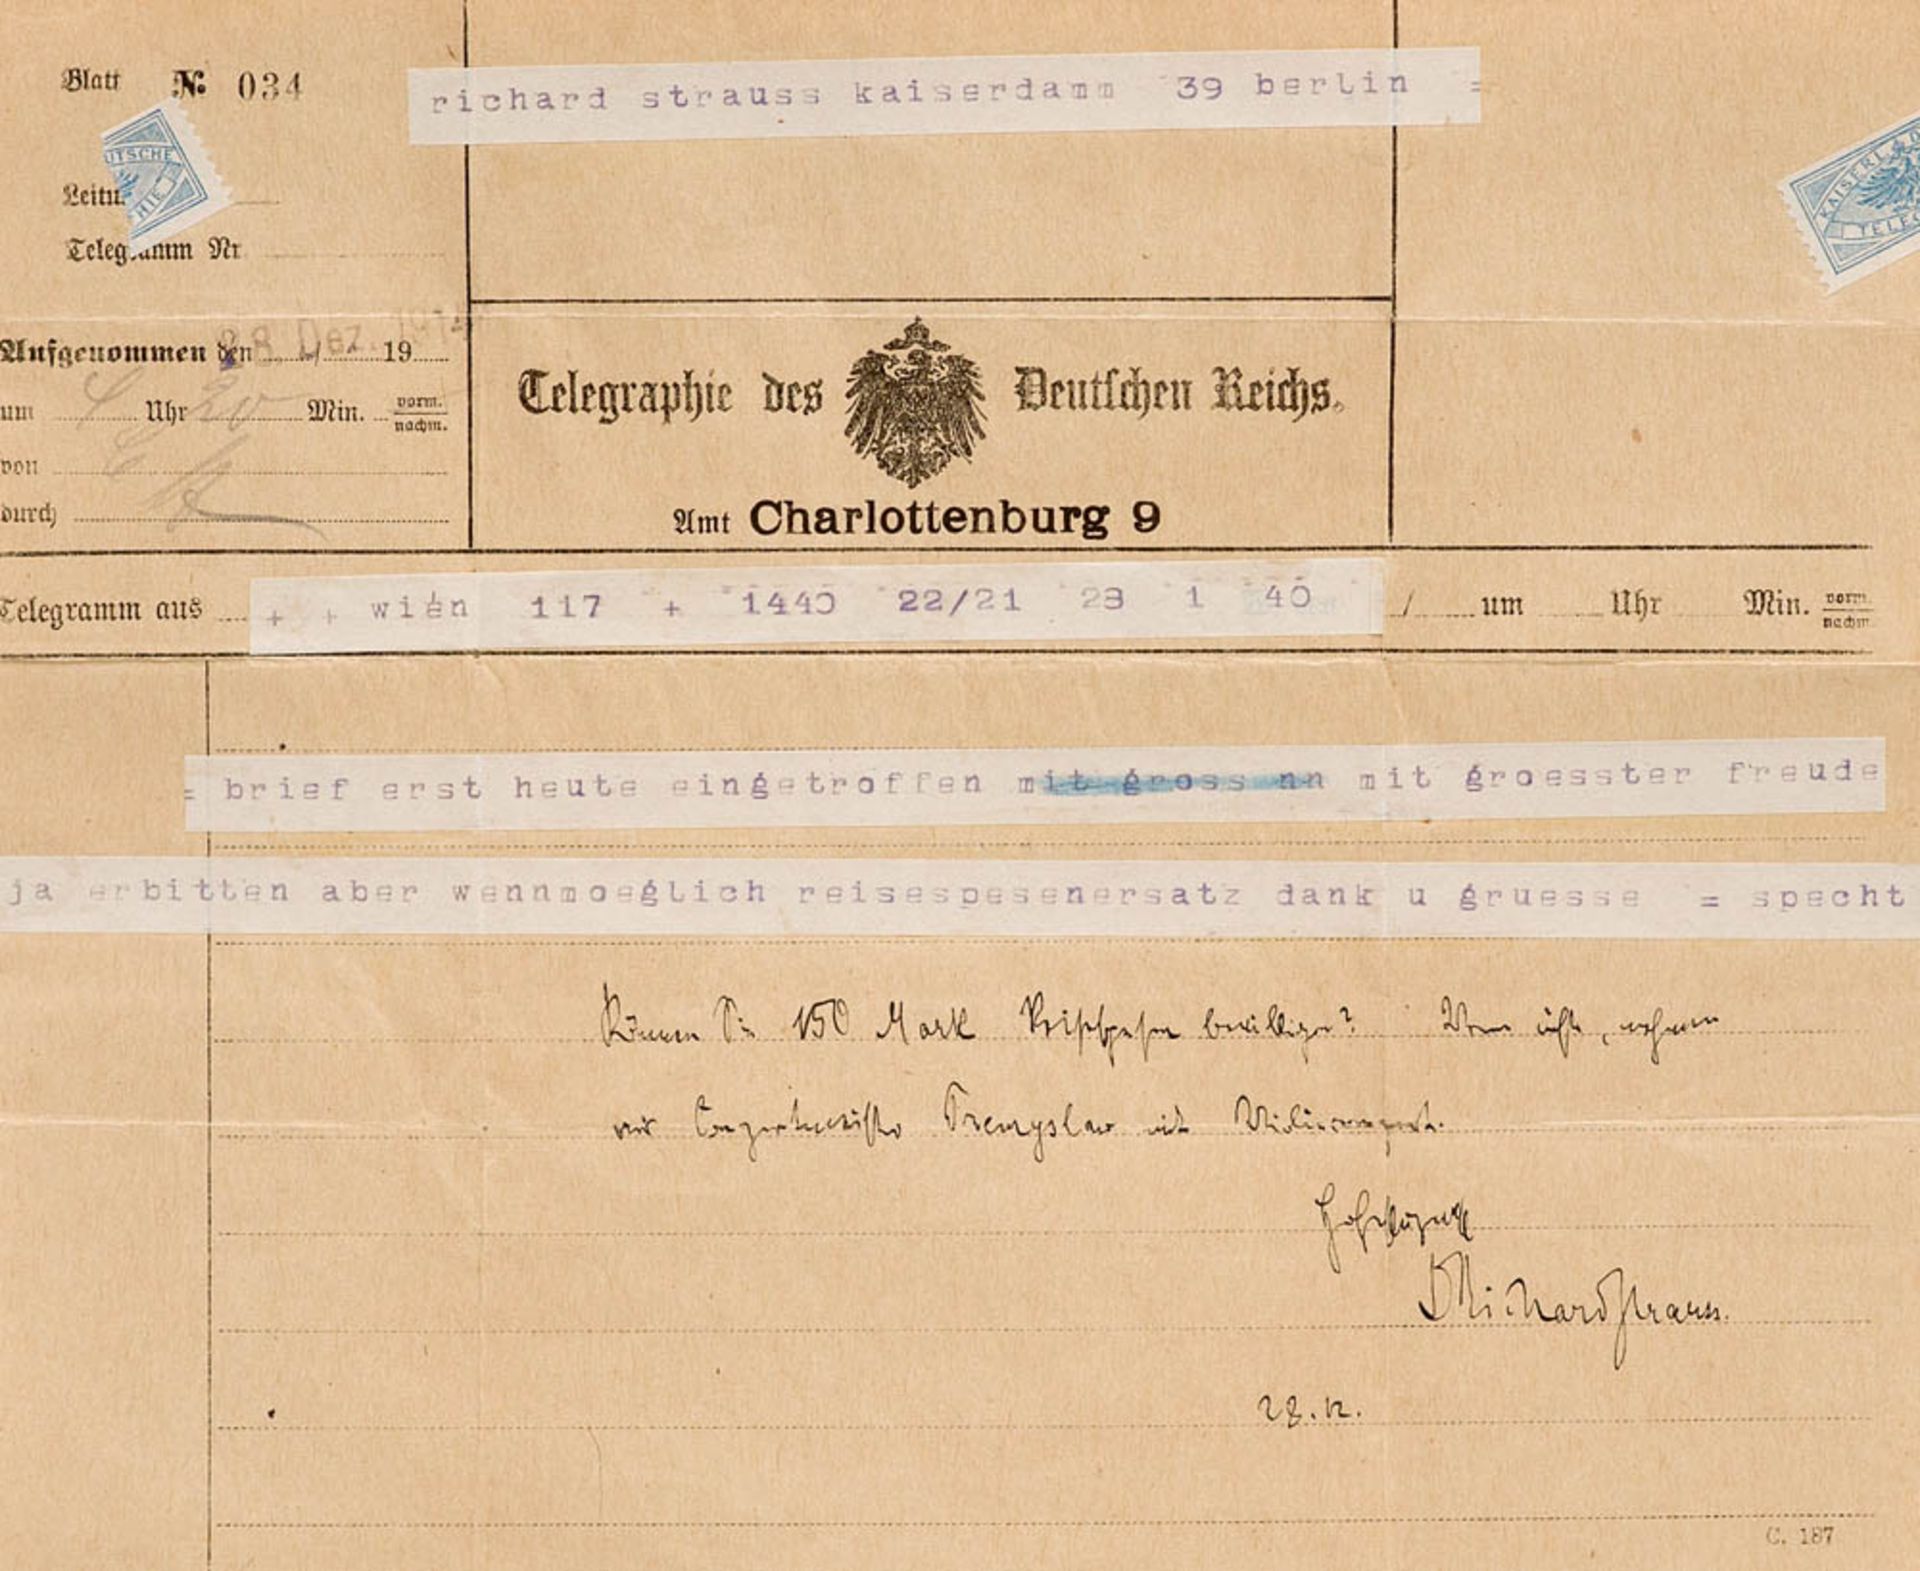 Strauss, Richard. Eigenhändige Nachricht mit Unterschrift unterhalb eines Telegramms von Richard